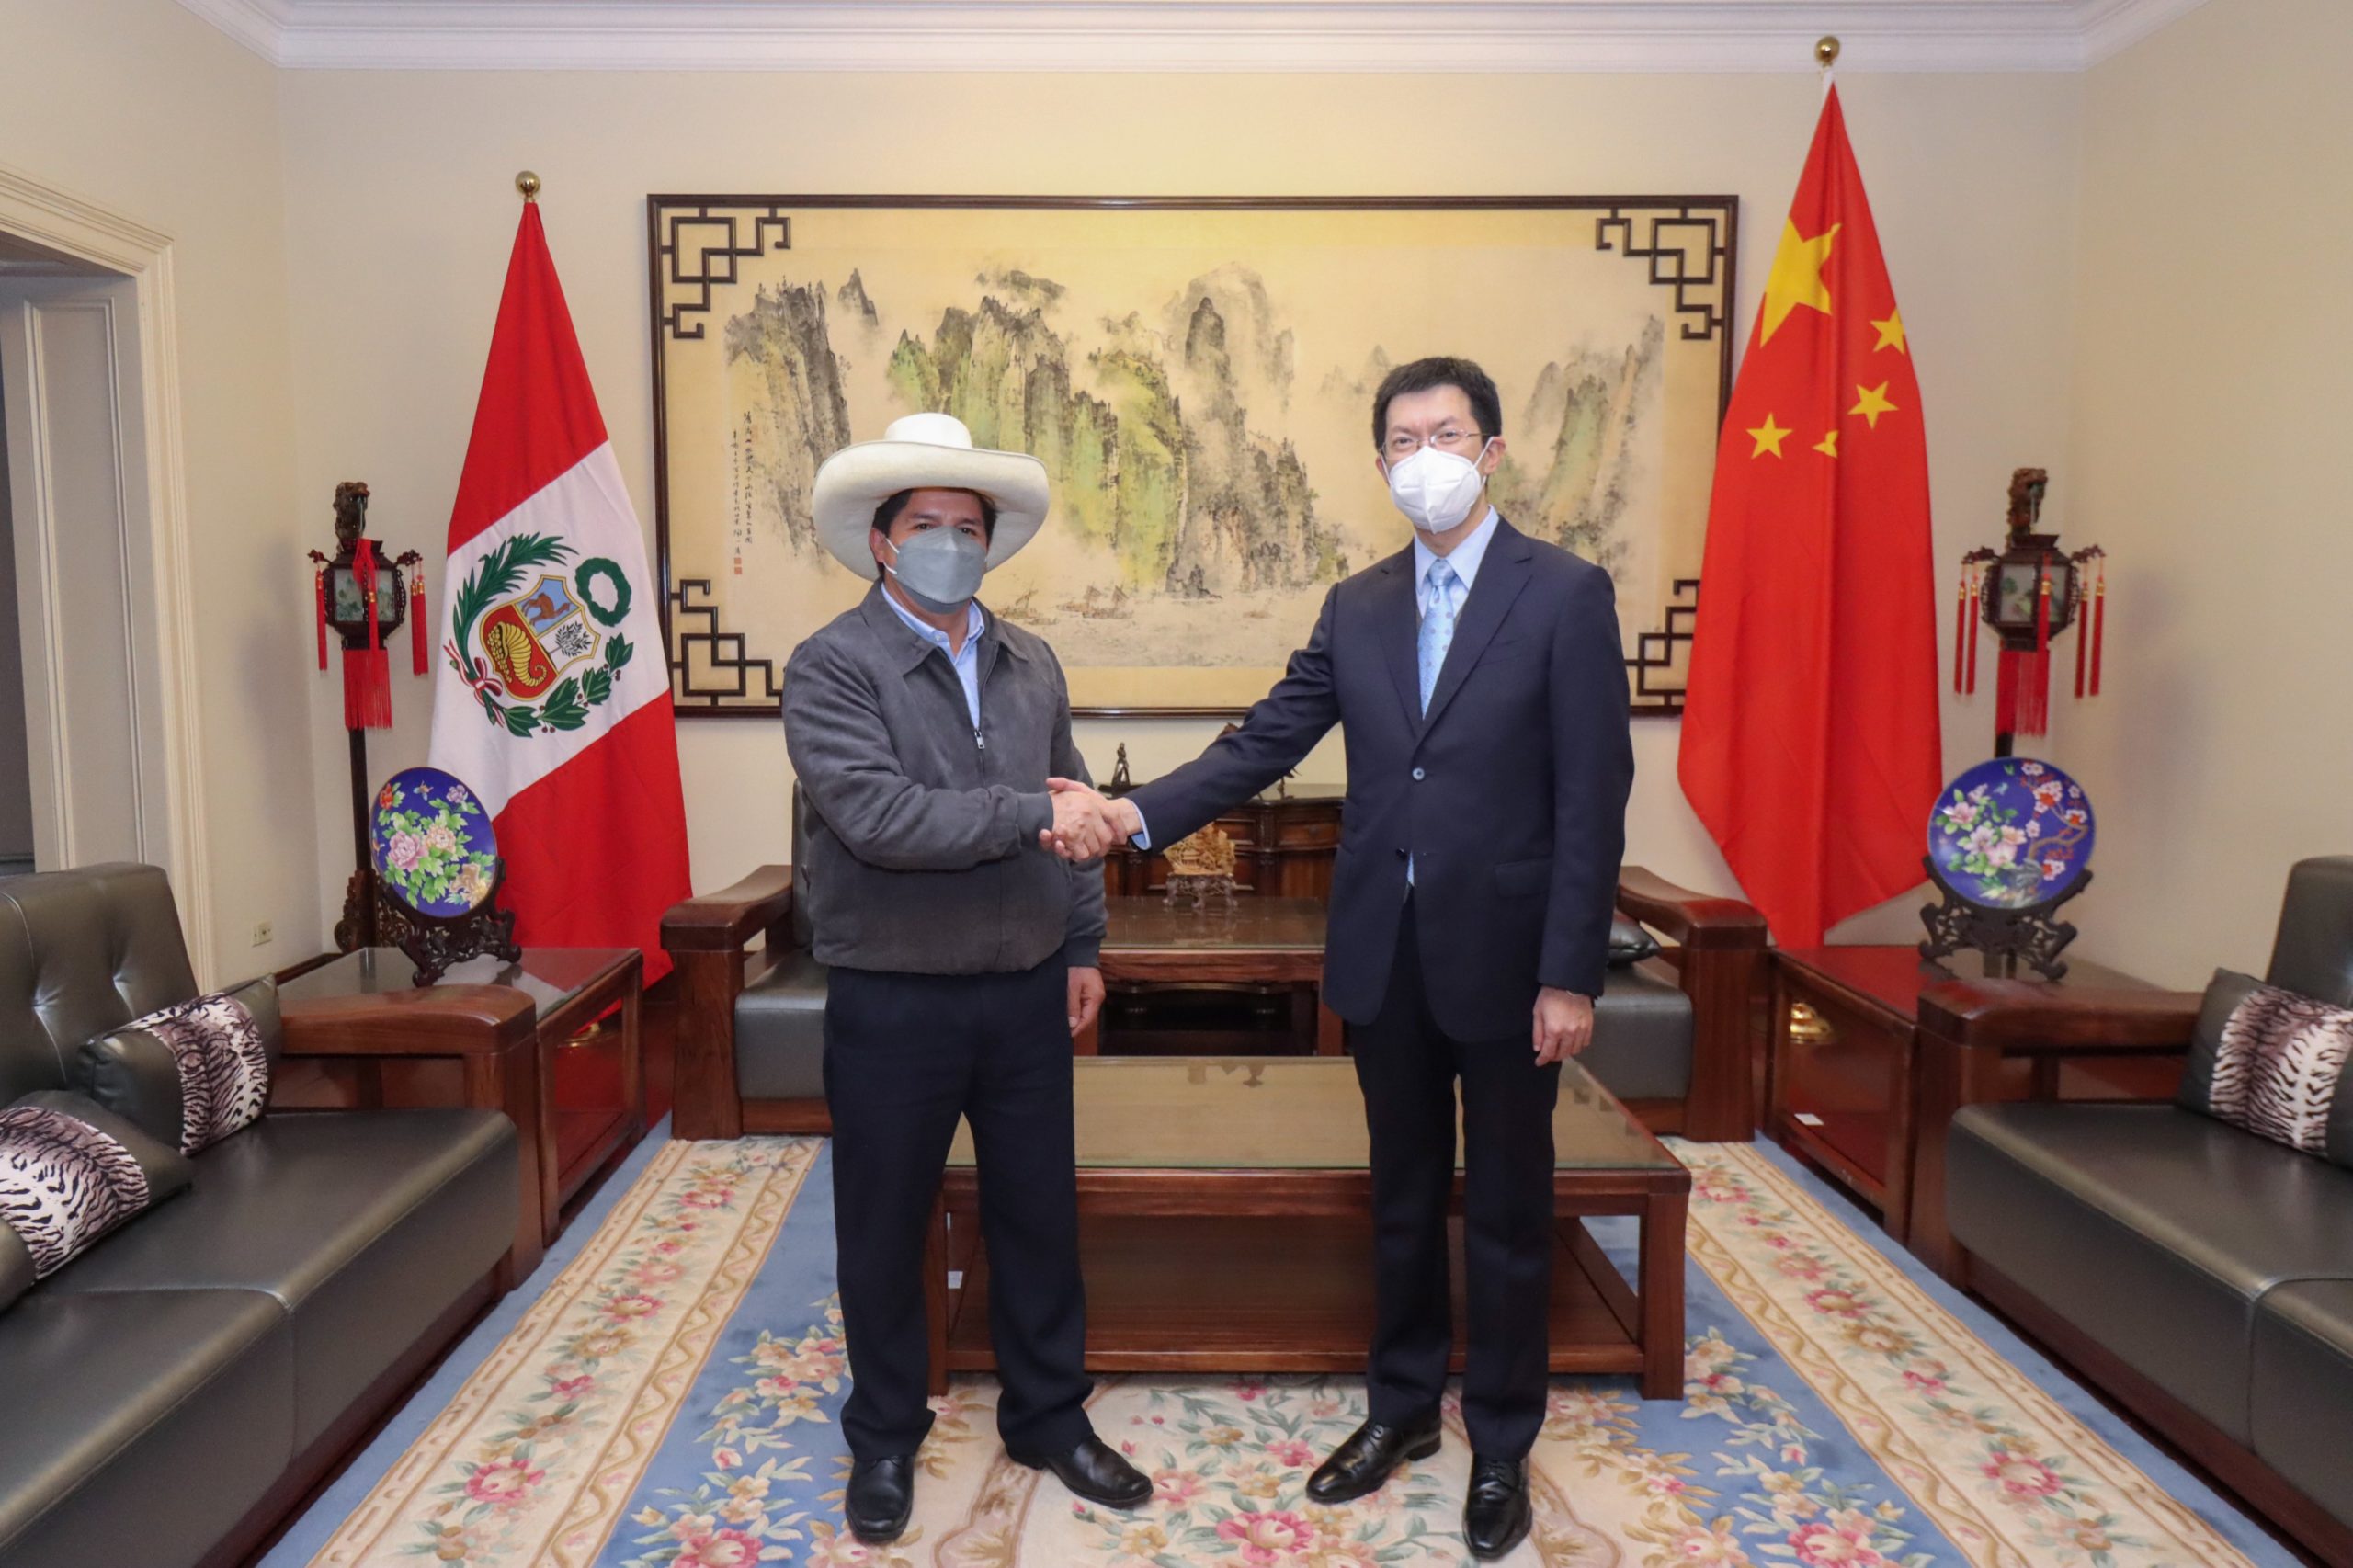 Pedro Castillo pacta cooperación con China sin conocerse resultado electoral